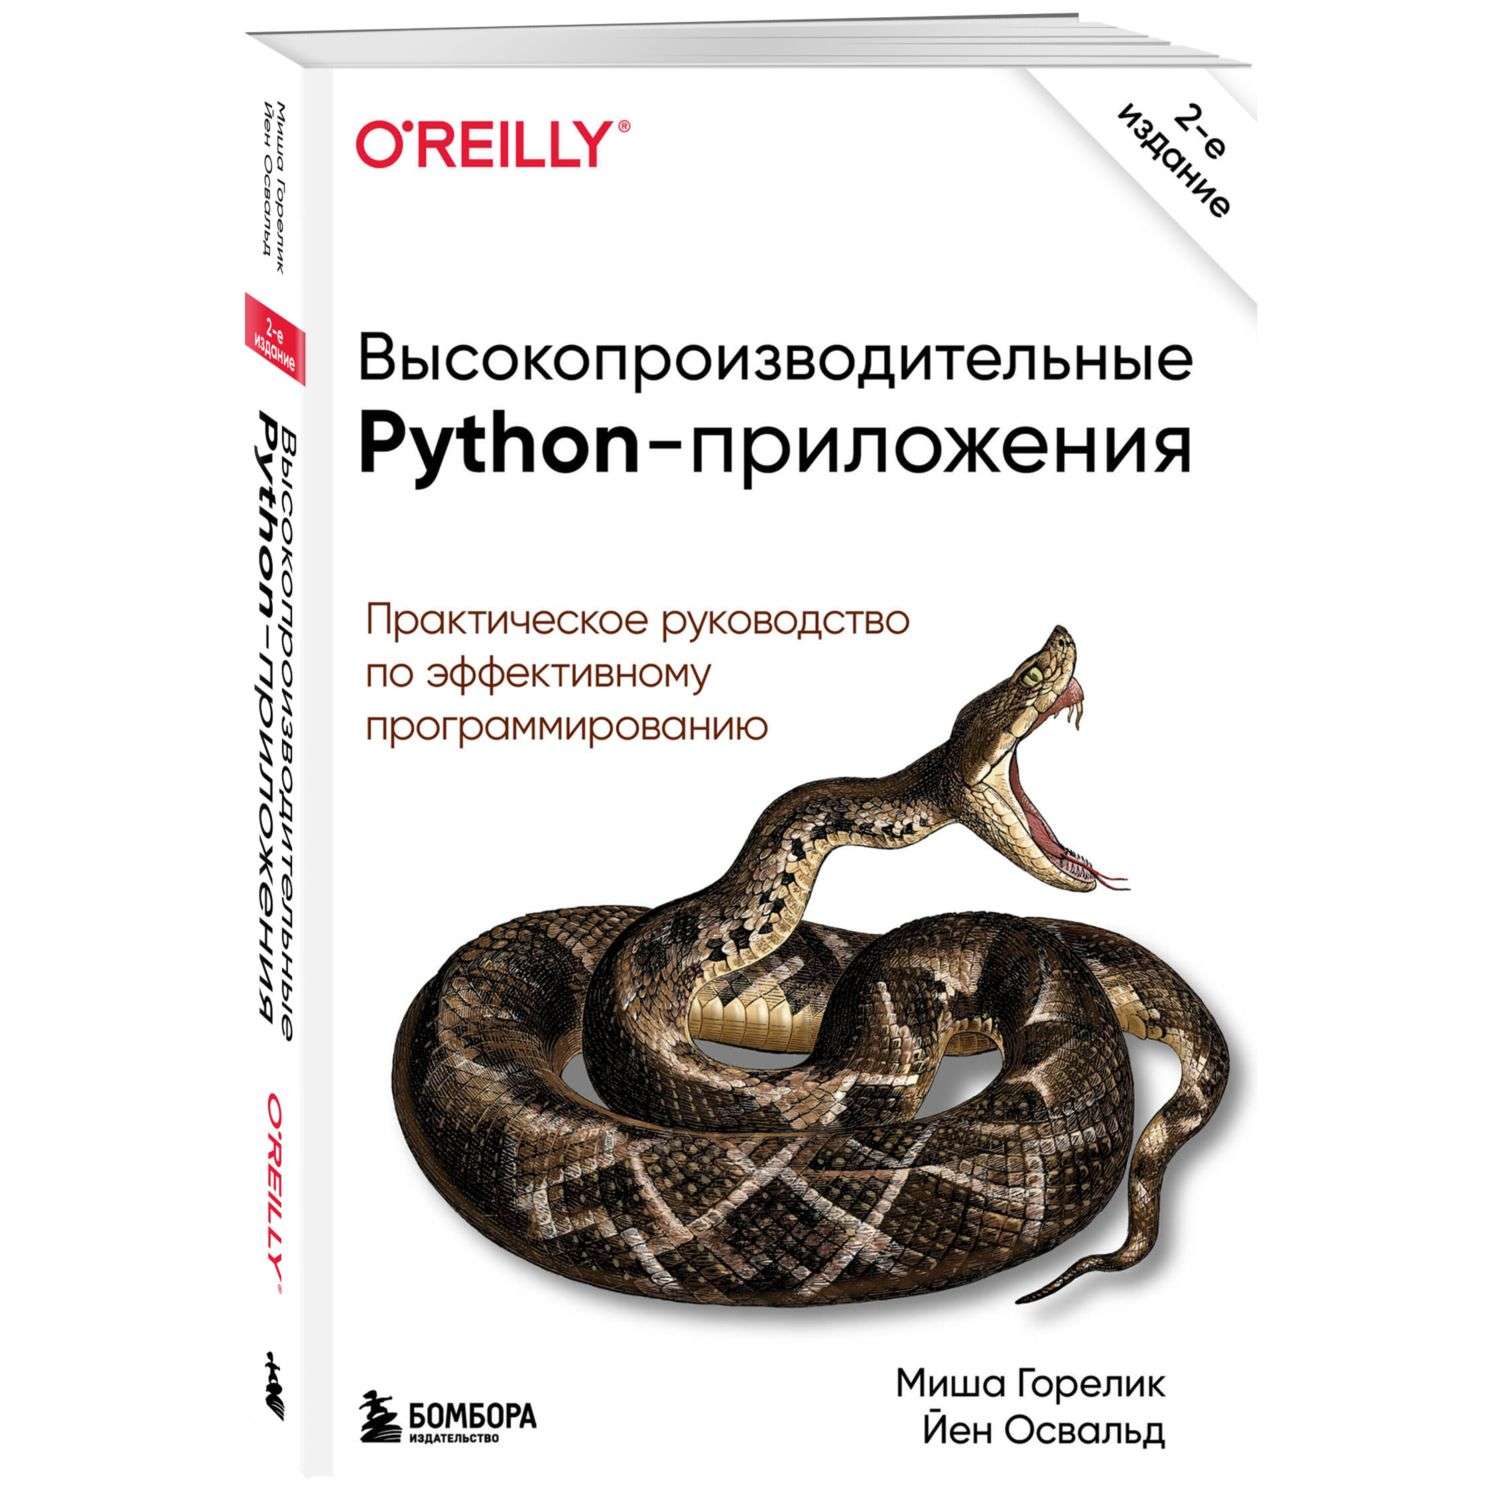 Книга БОМБОРА Высокопроизводительные Python приложения - фото 1